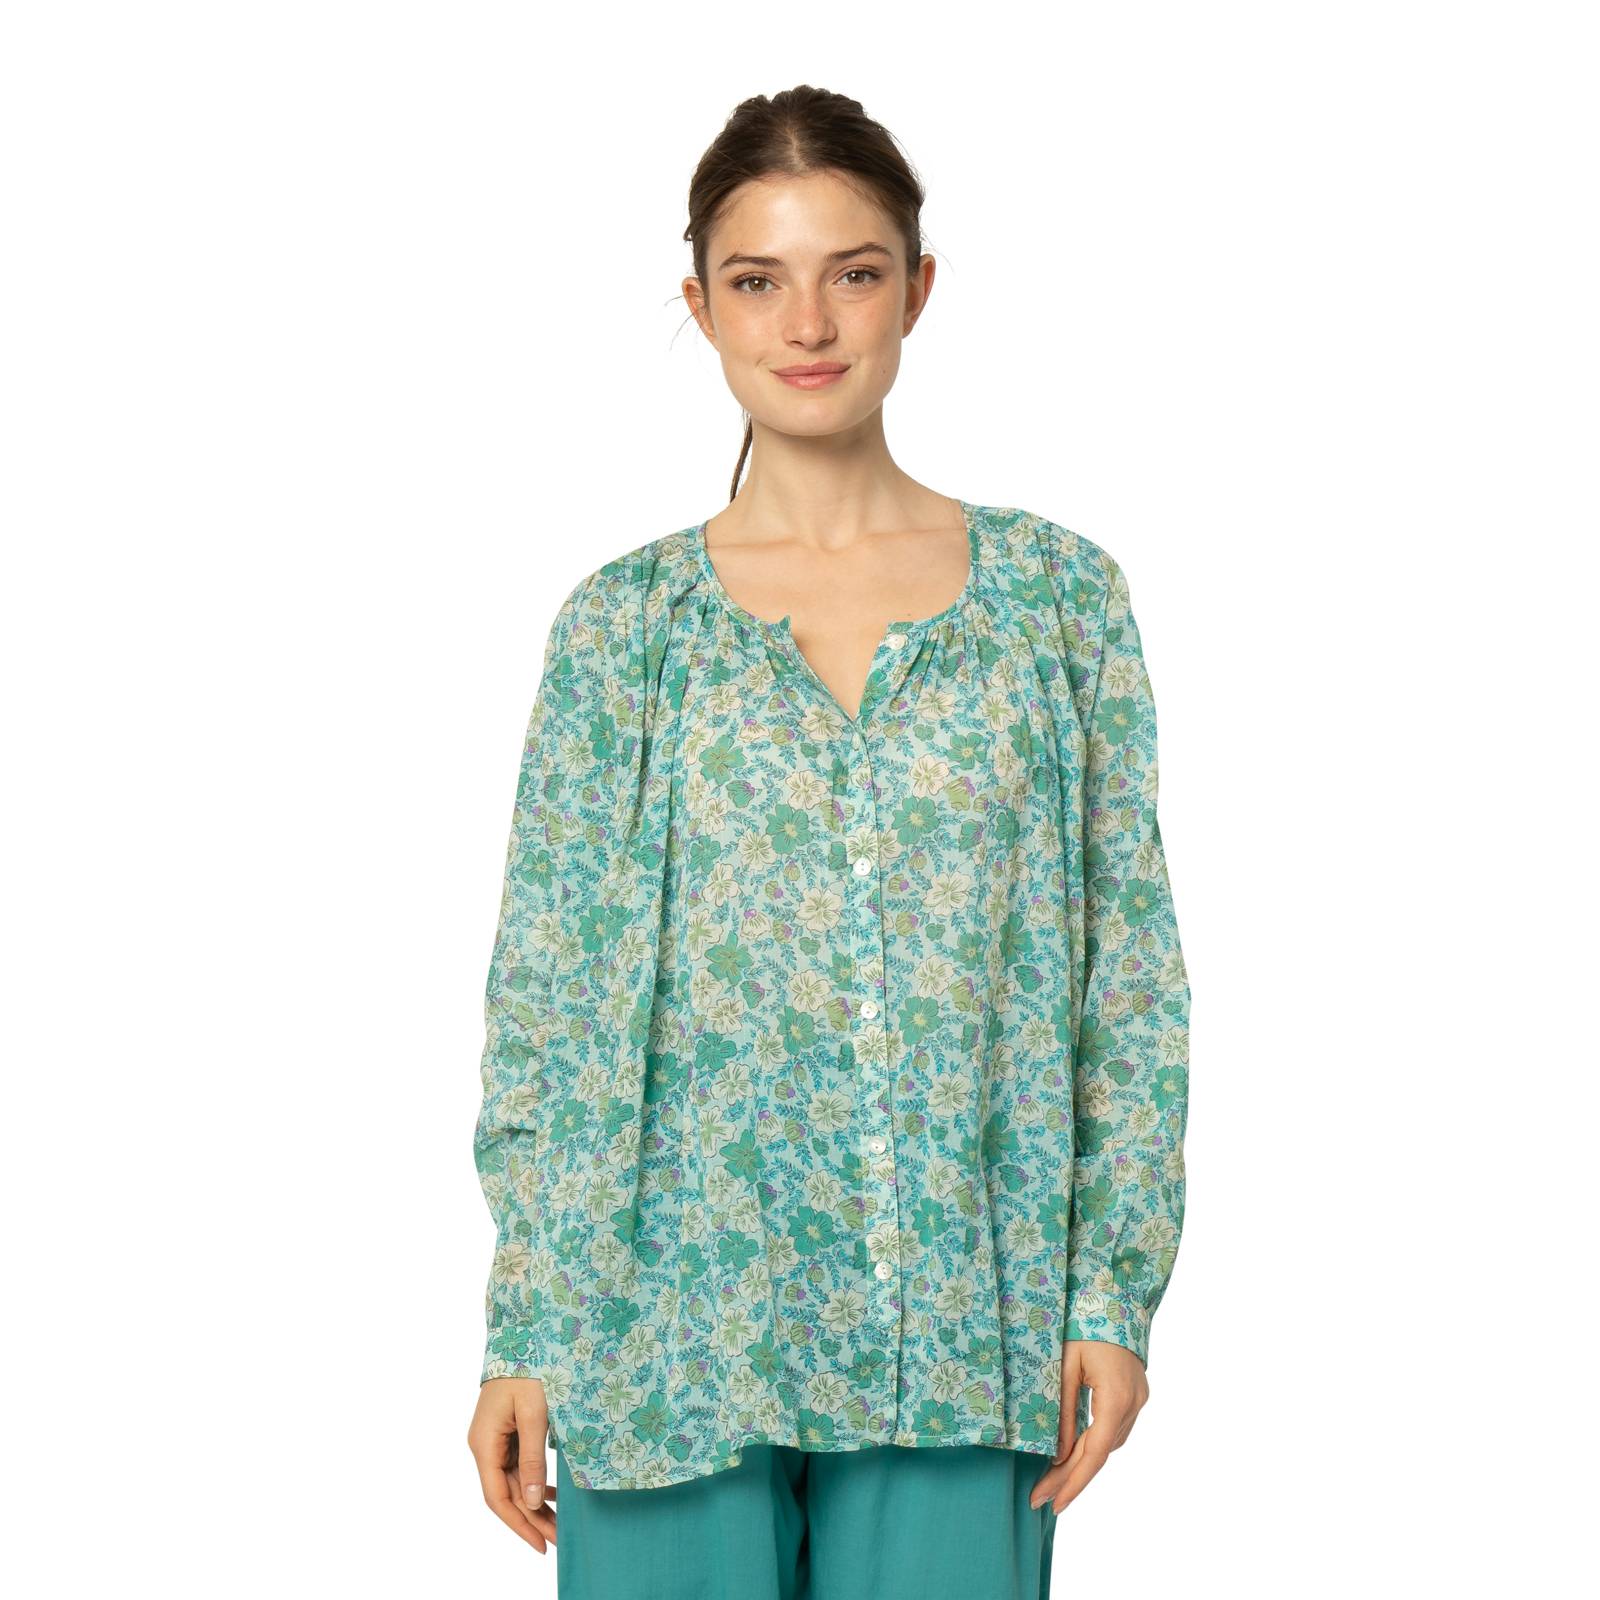 Chemises et blouses Chemise Chloe Georgette - 100% Coton Ethnique VT3240 GREEN